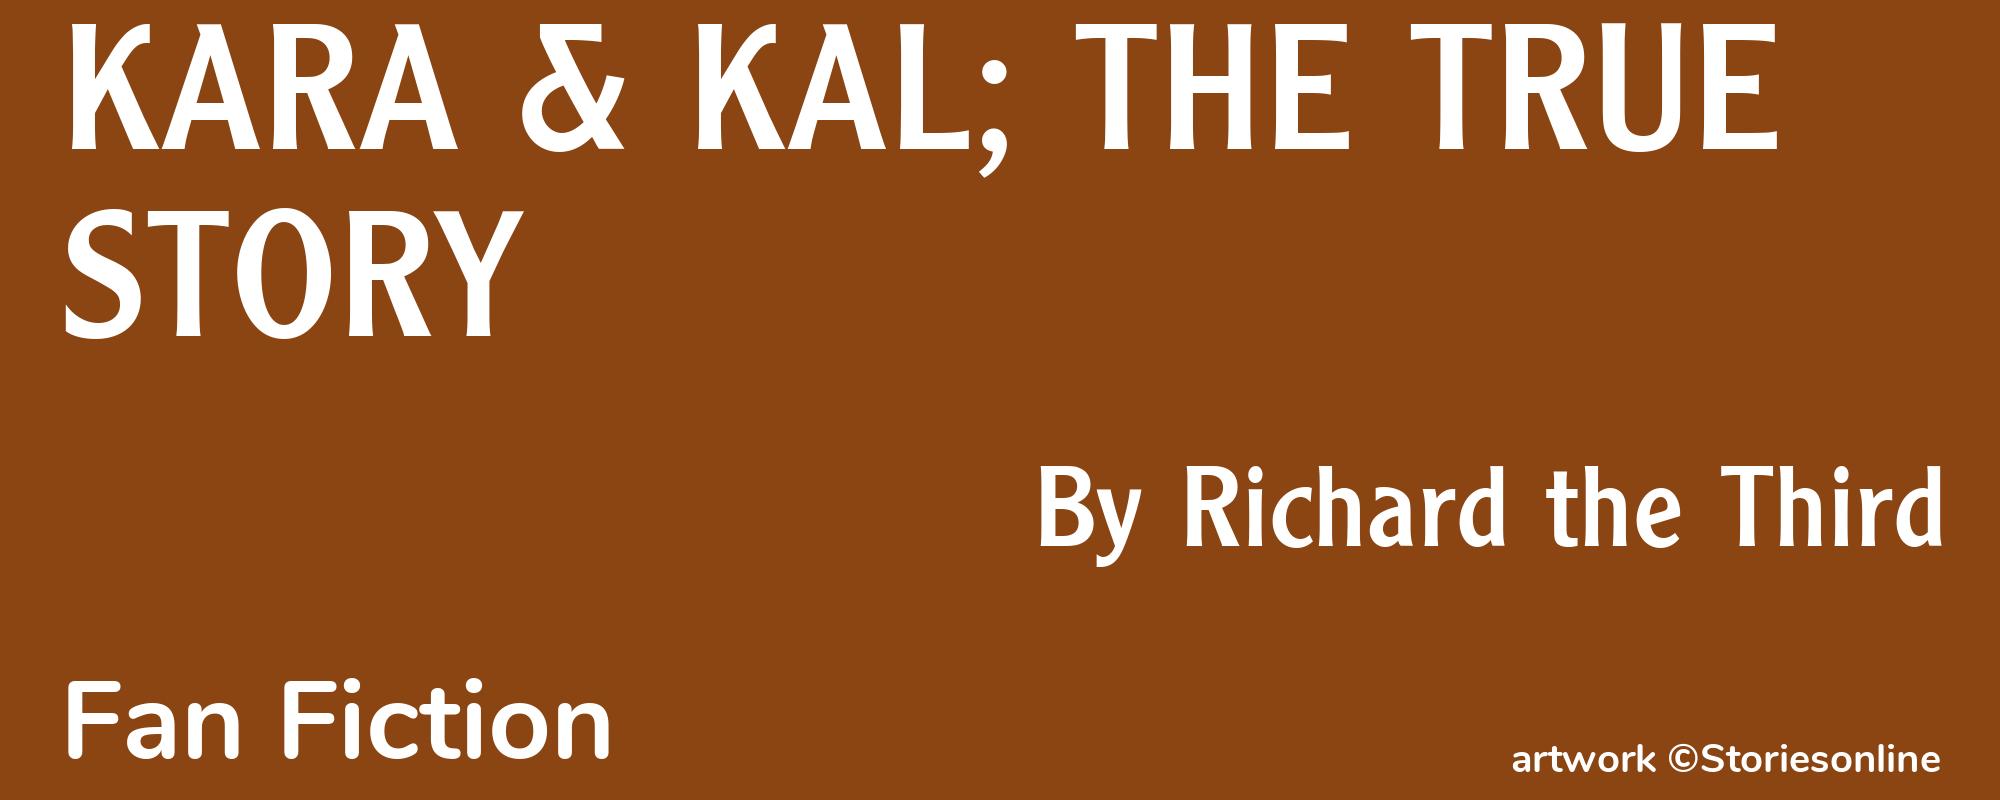 KARA & KAL; THE TRUE STORY - Cover